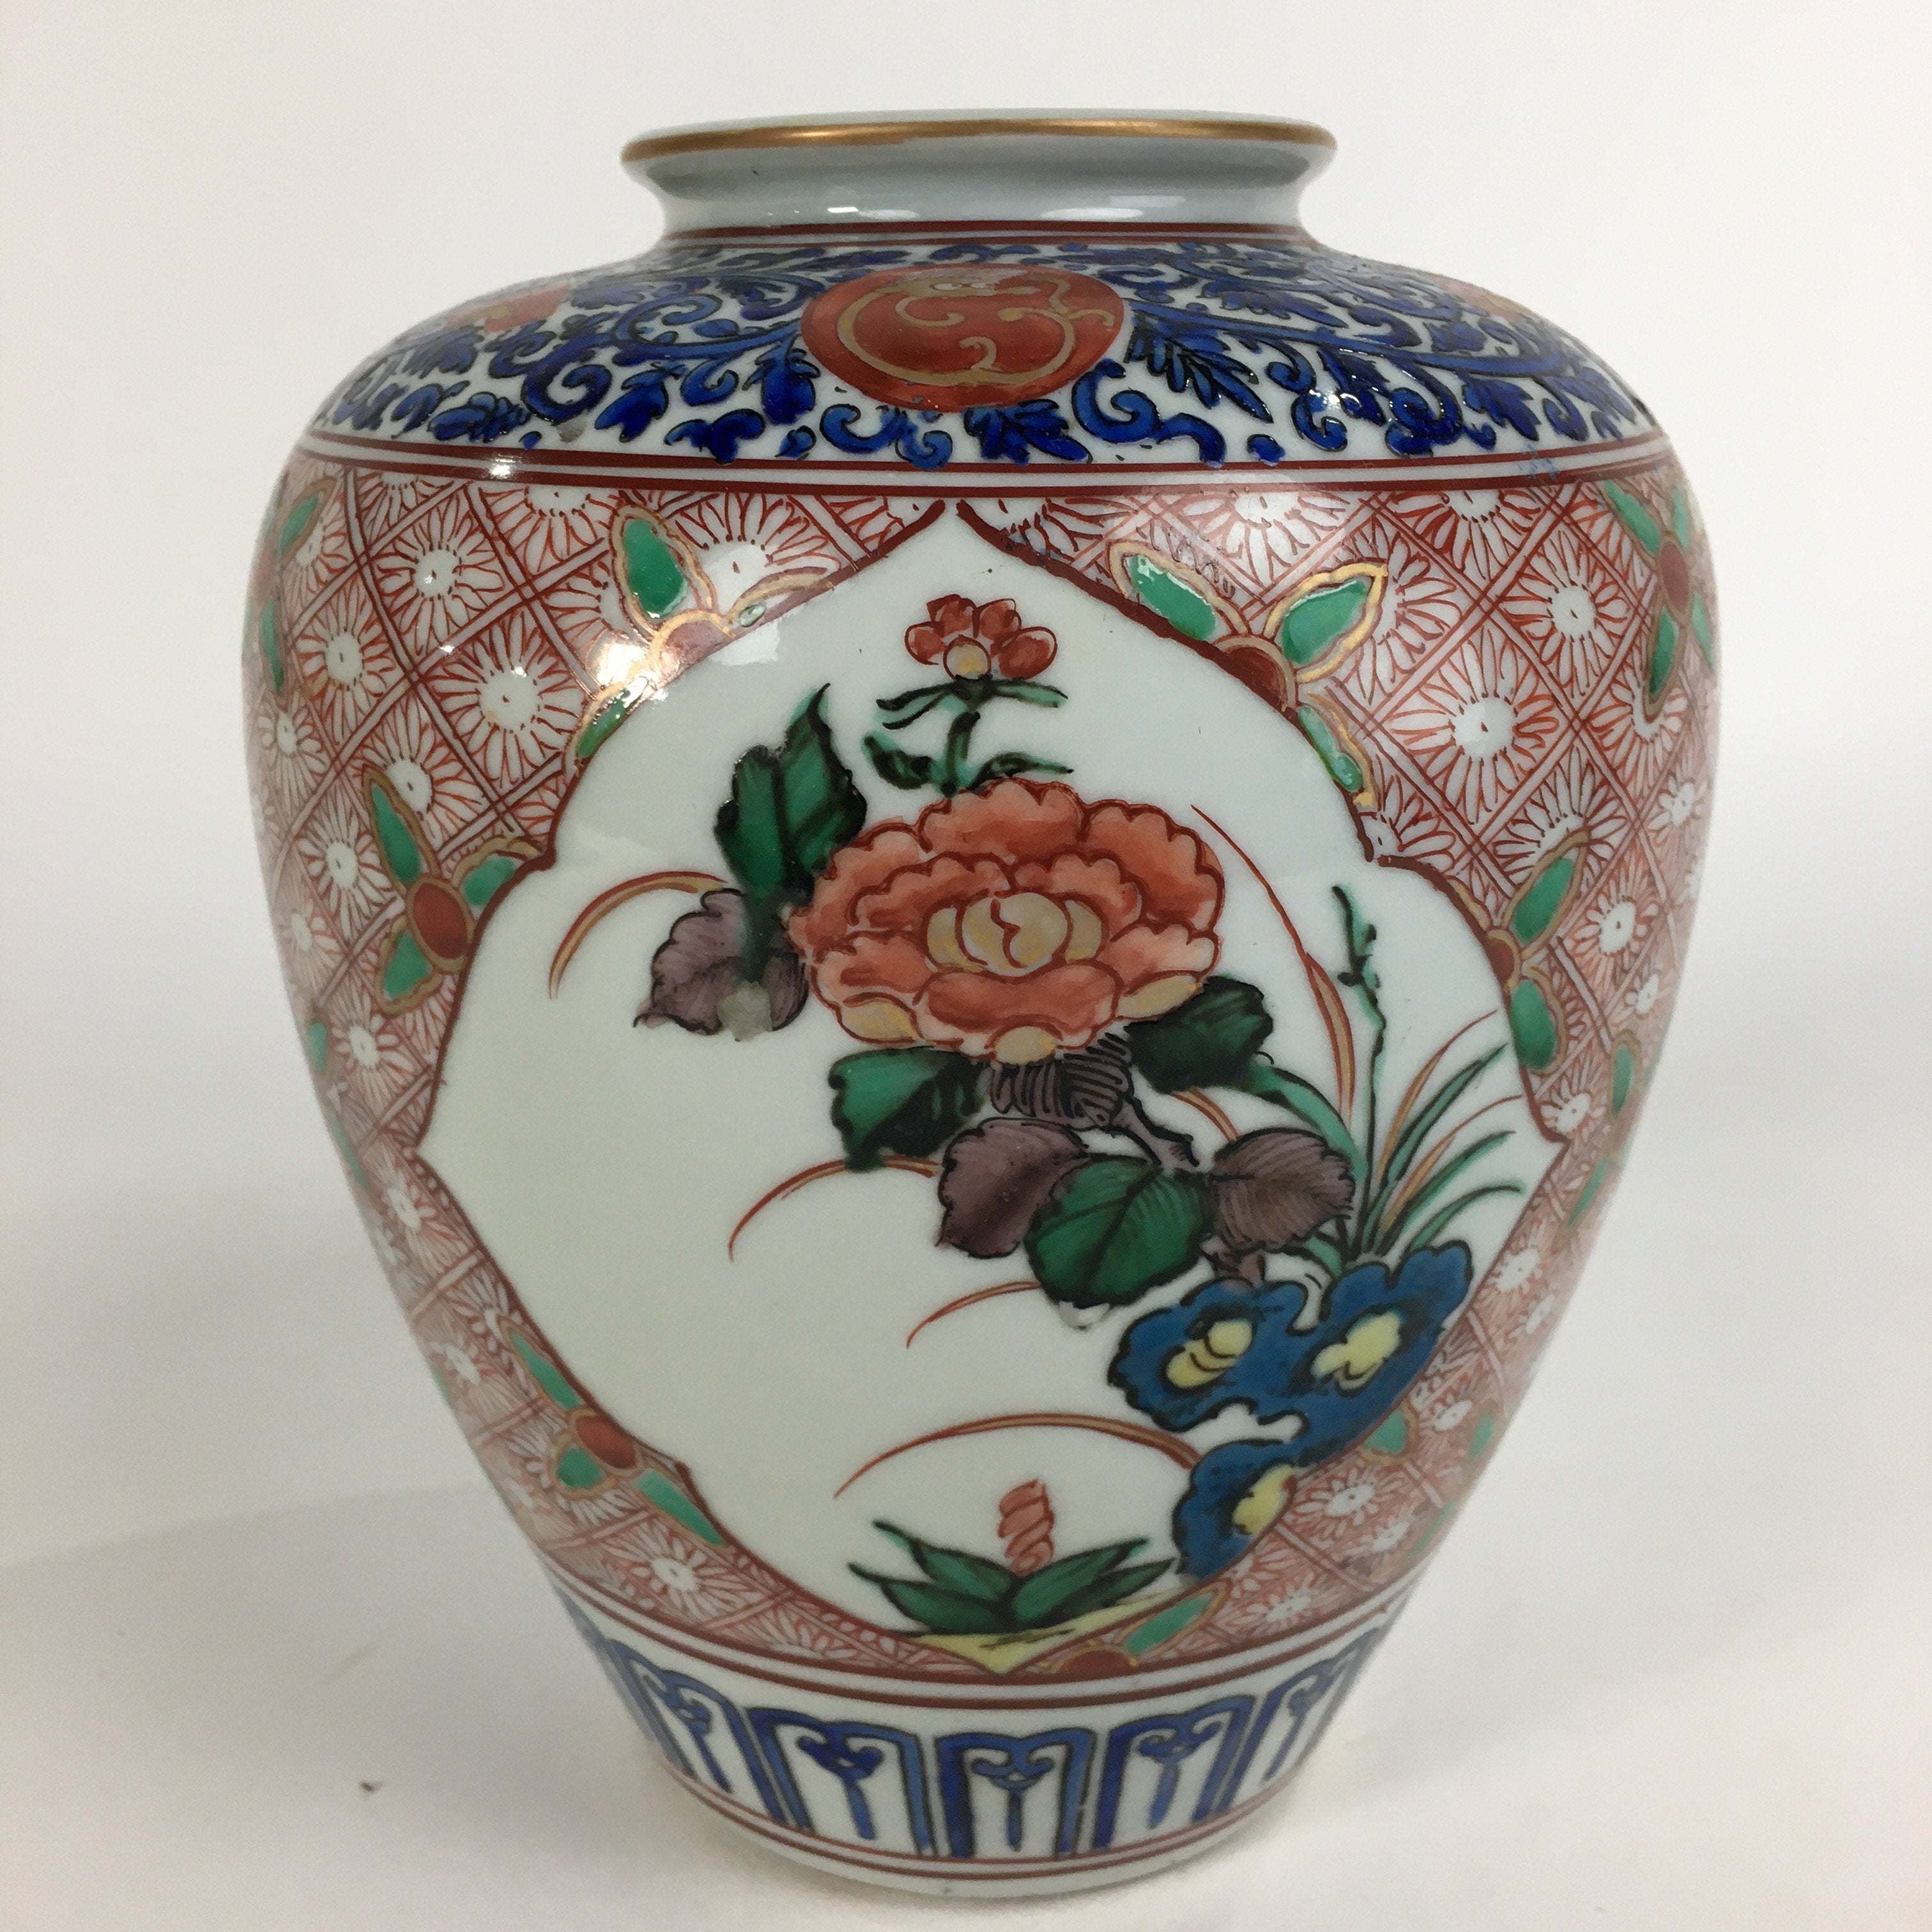 Japanese Porcelain Flower Vase Kutani ware Vtg Kabin Ikebana Arrangement FV926